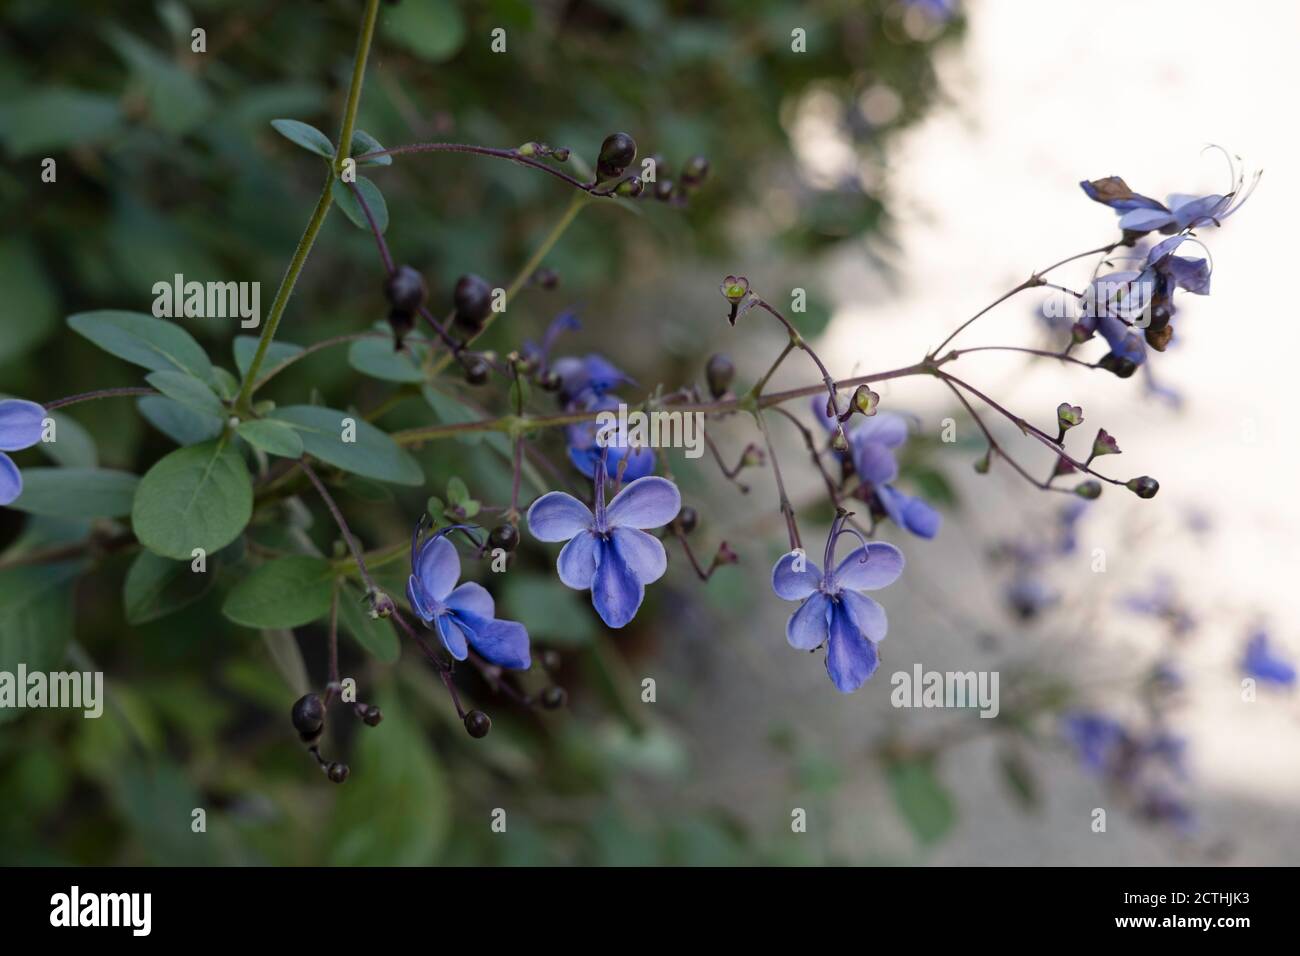 Clerodendrum Ugandense oder Blue Butterfly Bush Flower ist eine Tub-Pflanze mit samtigen Blättern. Konzentrieren Sie sich auf die blauen Blumen Stockfoto